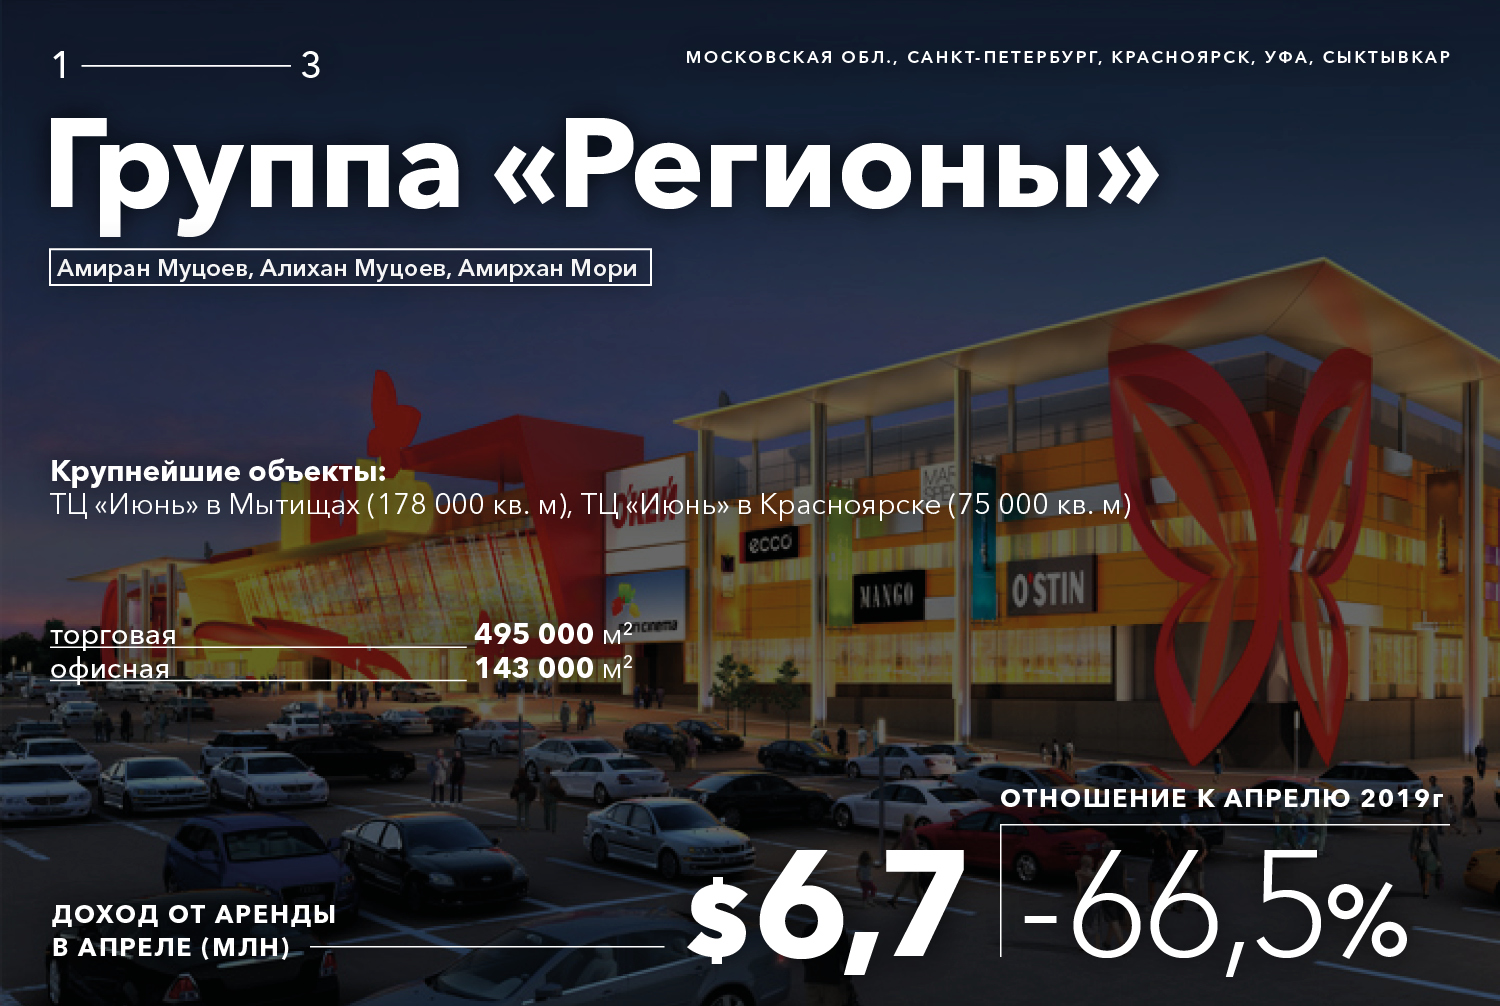 Сколько потеряли из-за пандемии короли российской недвижимости